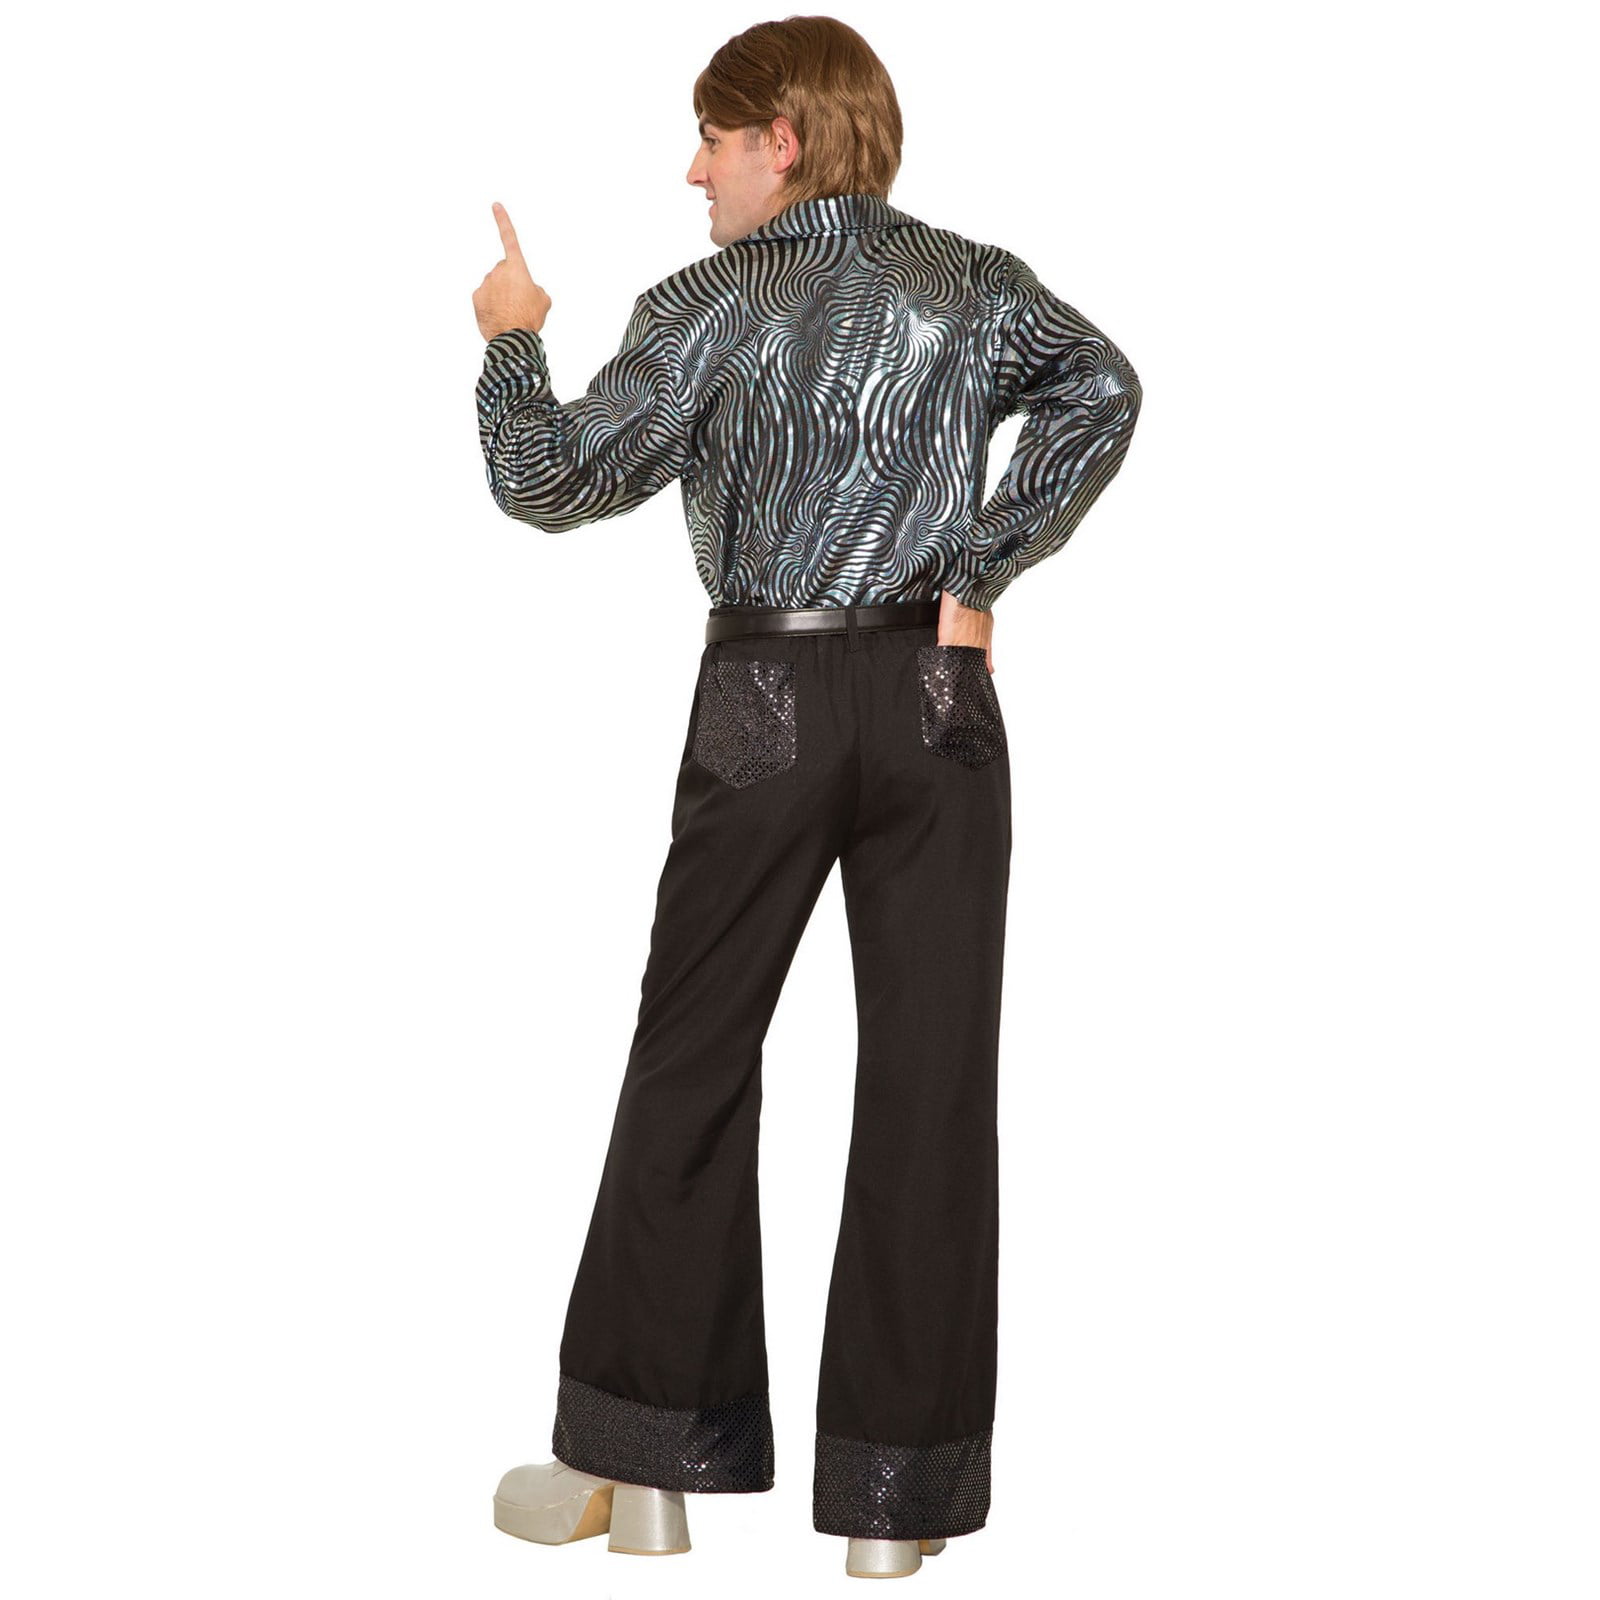 Mens 70'S Black Sequin Pants Halloween Costume - Walmart.com